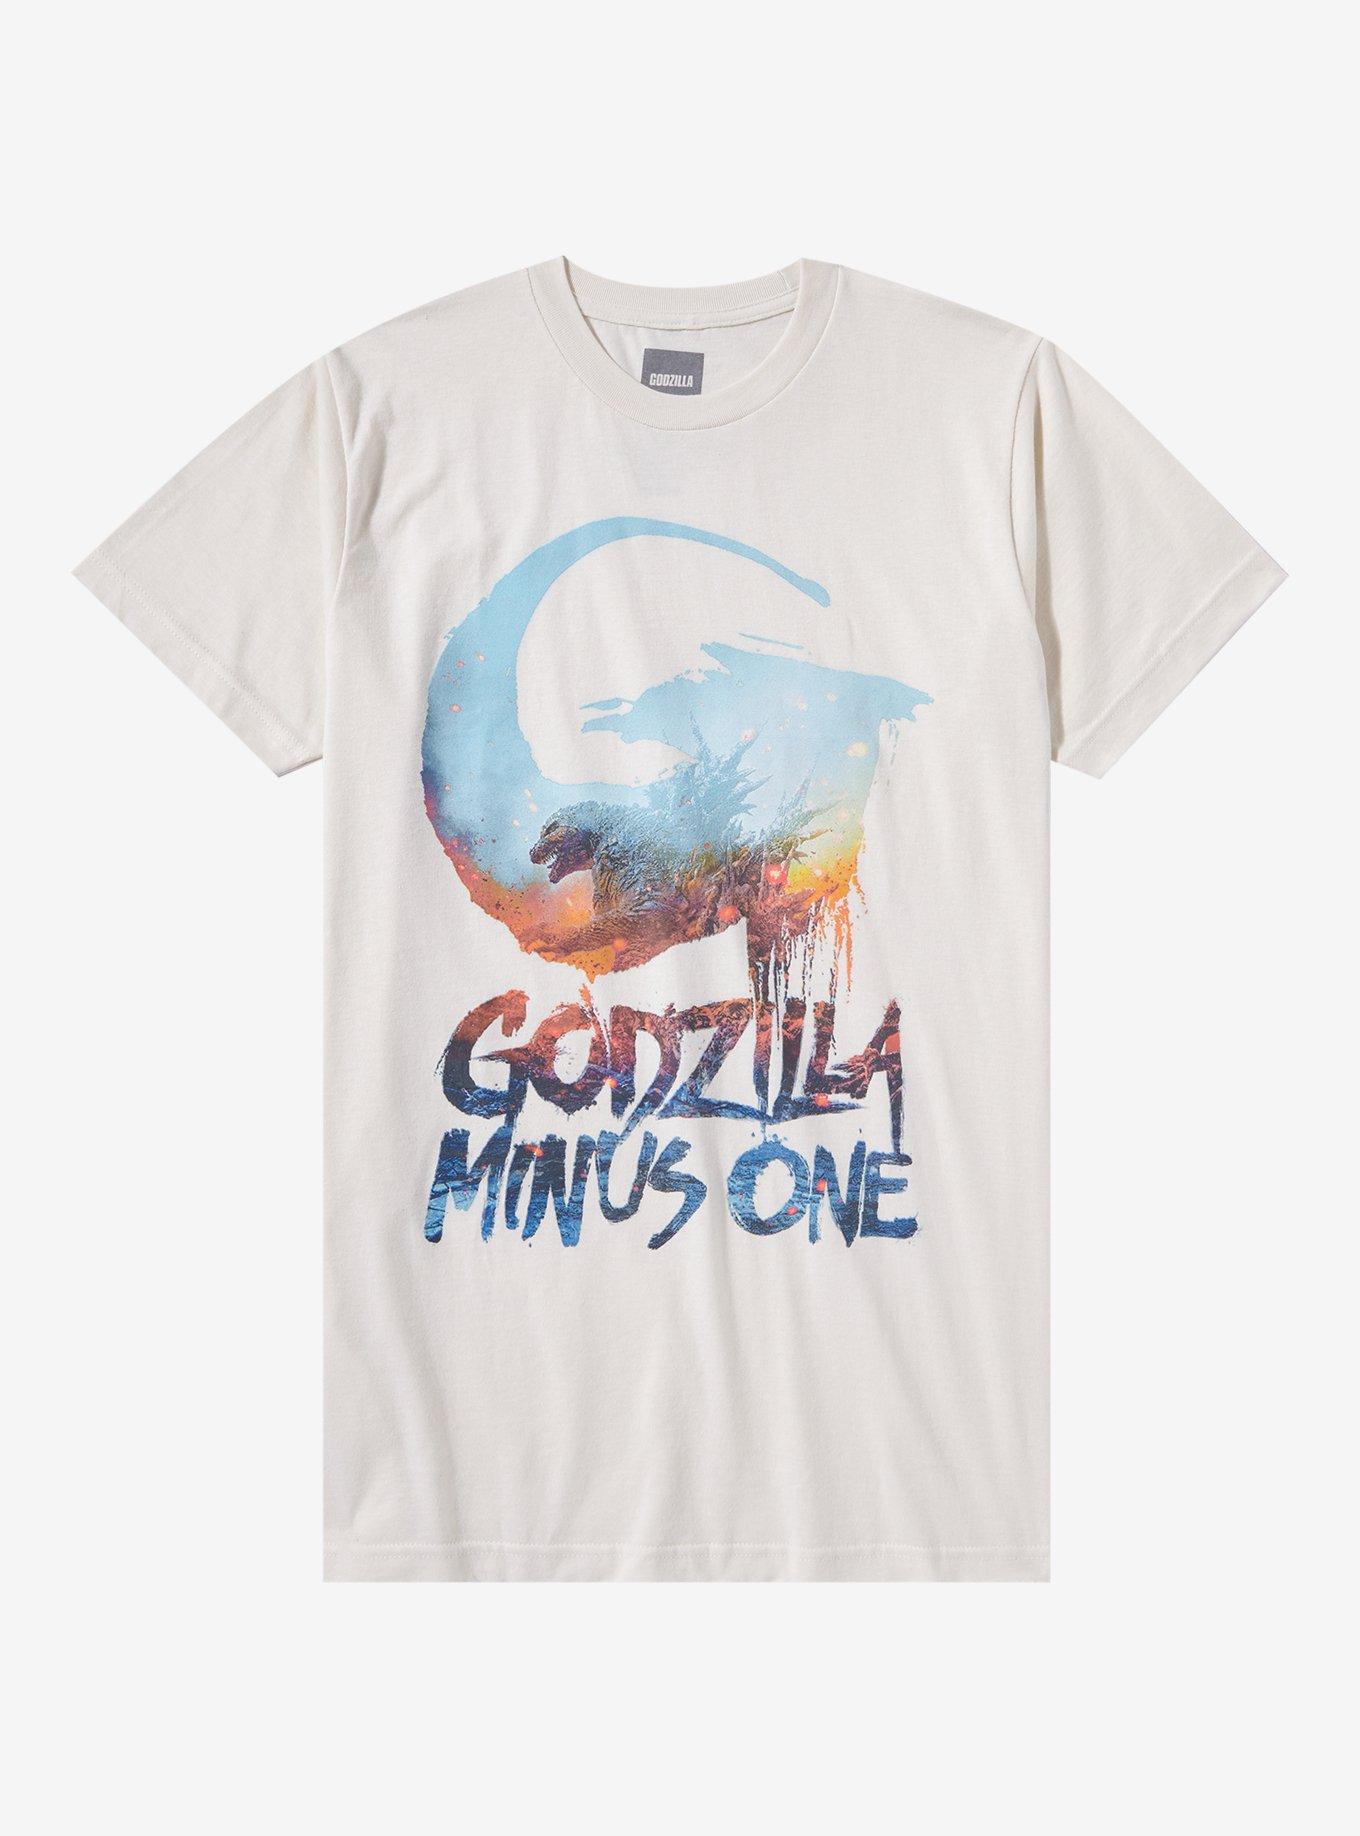 Godzilla Minus One Poster T-Shirt